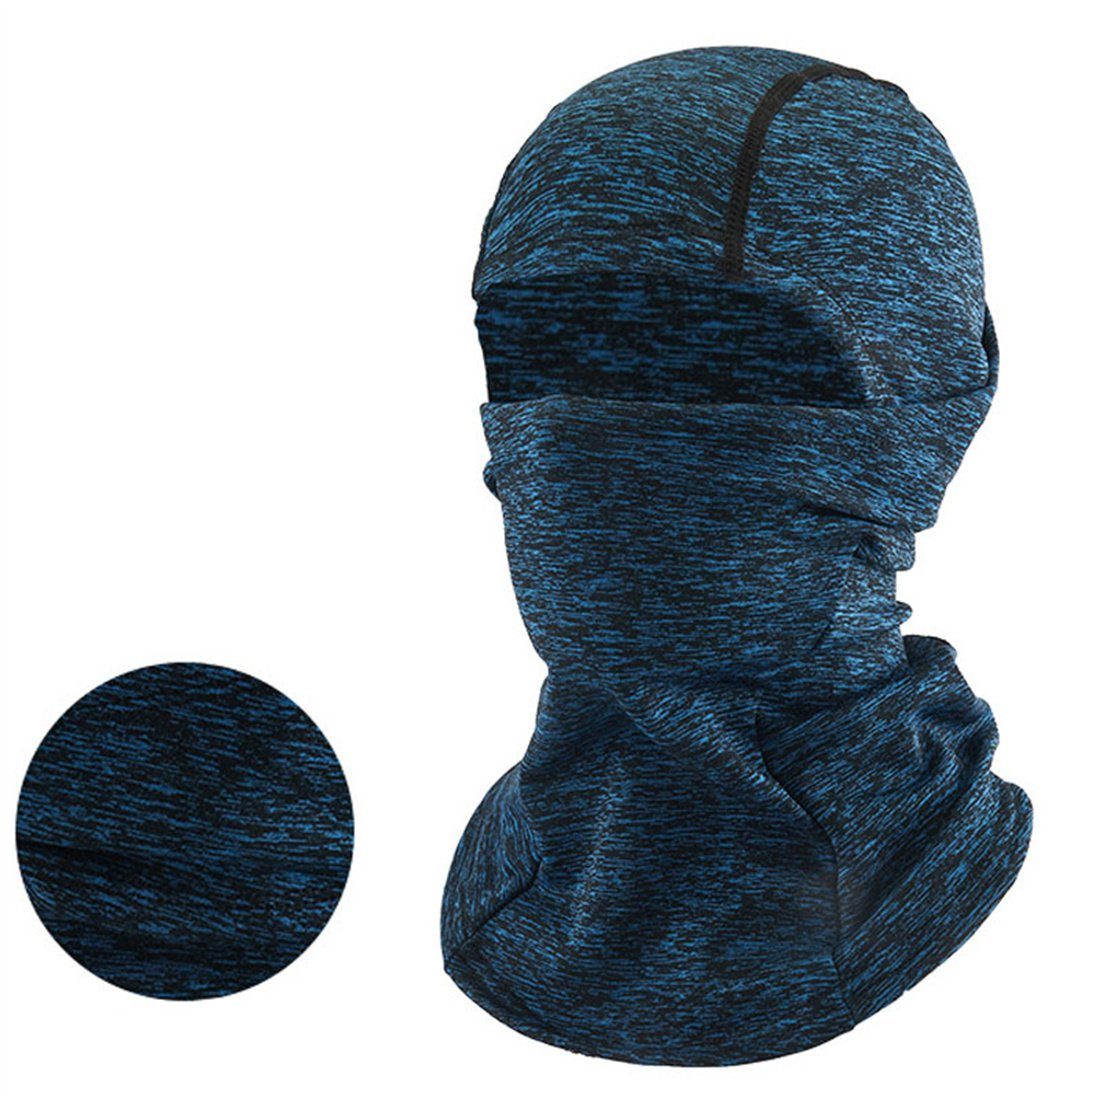 DÖRÖY Sturmhaube Winter Radfahren Maske, warme blau Kopfbedeckung, Ski kalte unisex